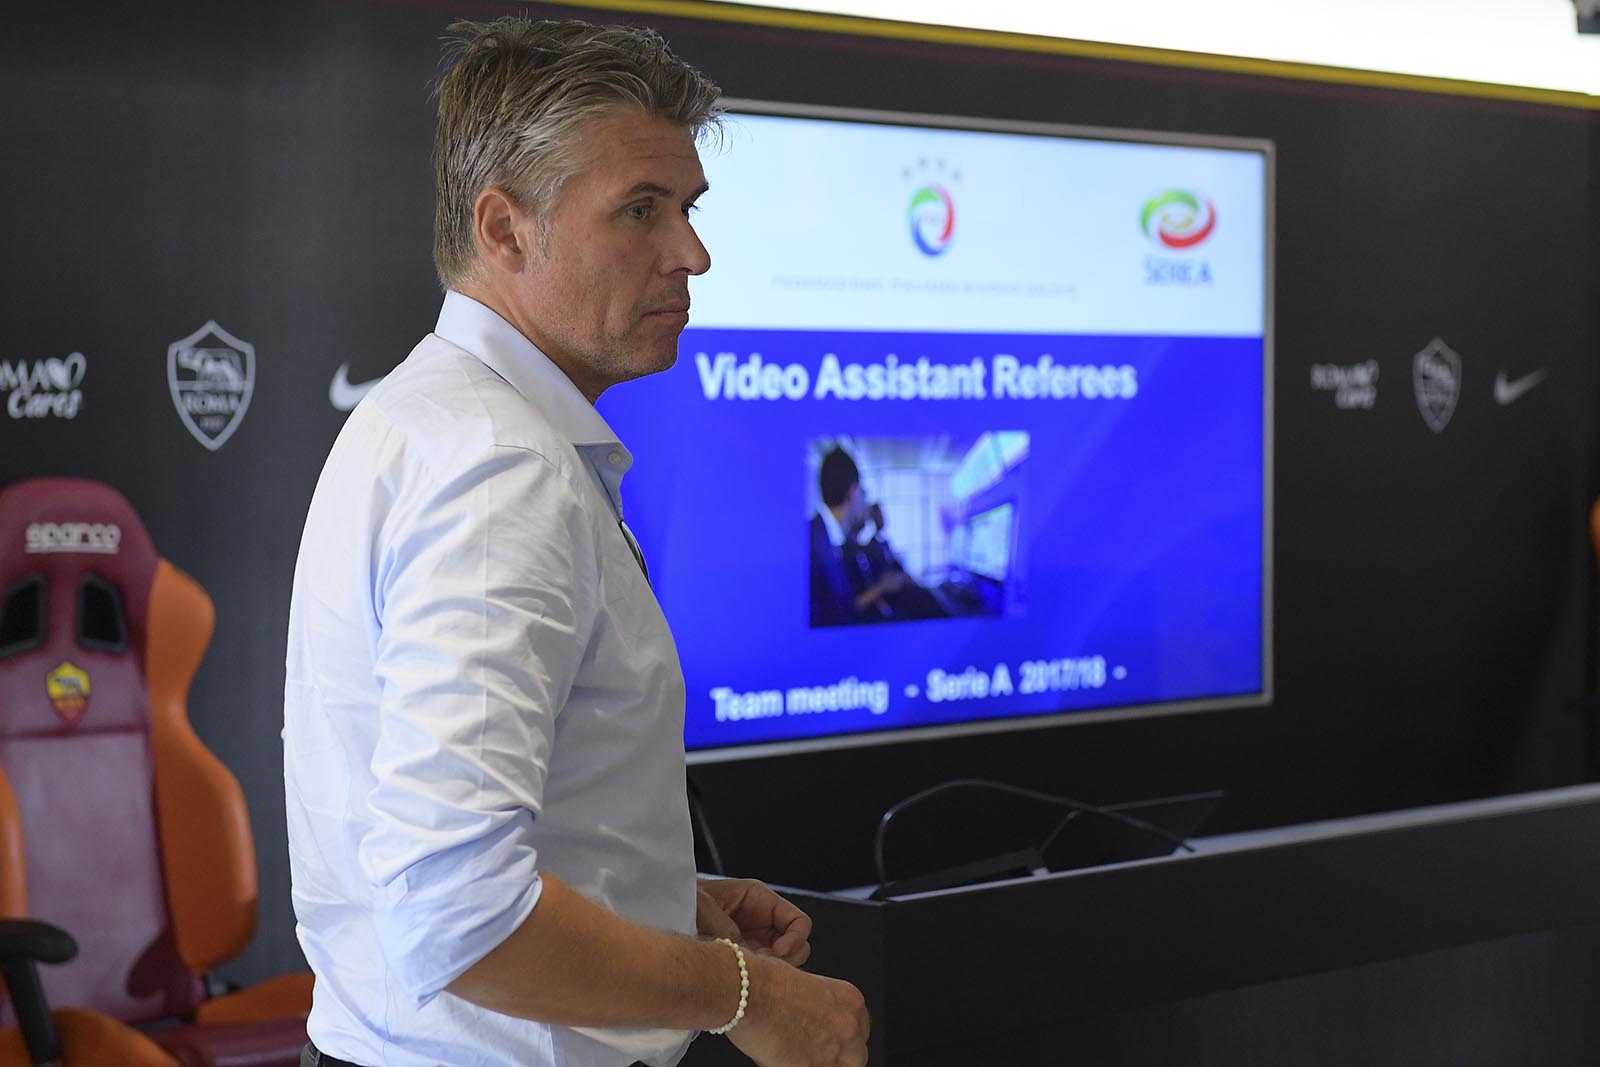 Comitato arbitrale UEFA, Rosetti: “Troppe pressioni sui direttori di gara”